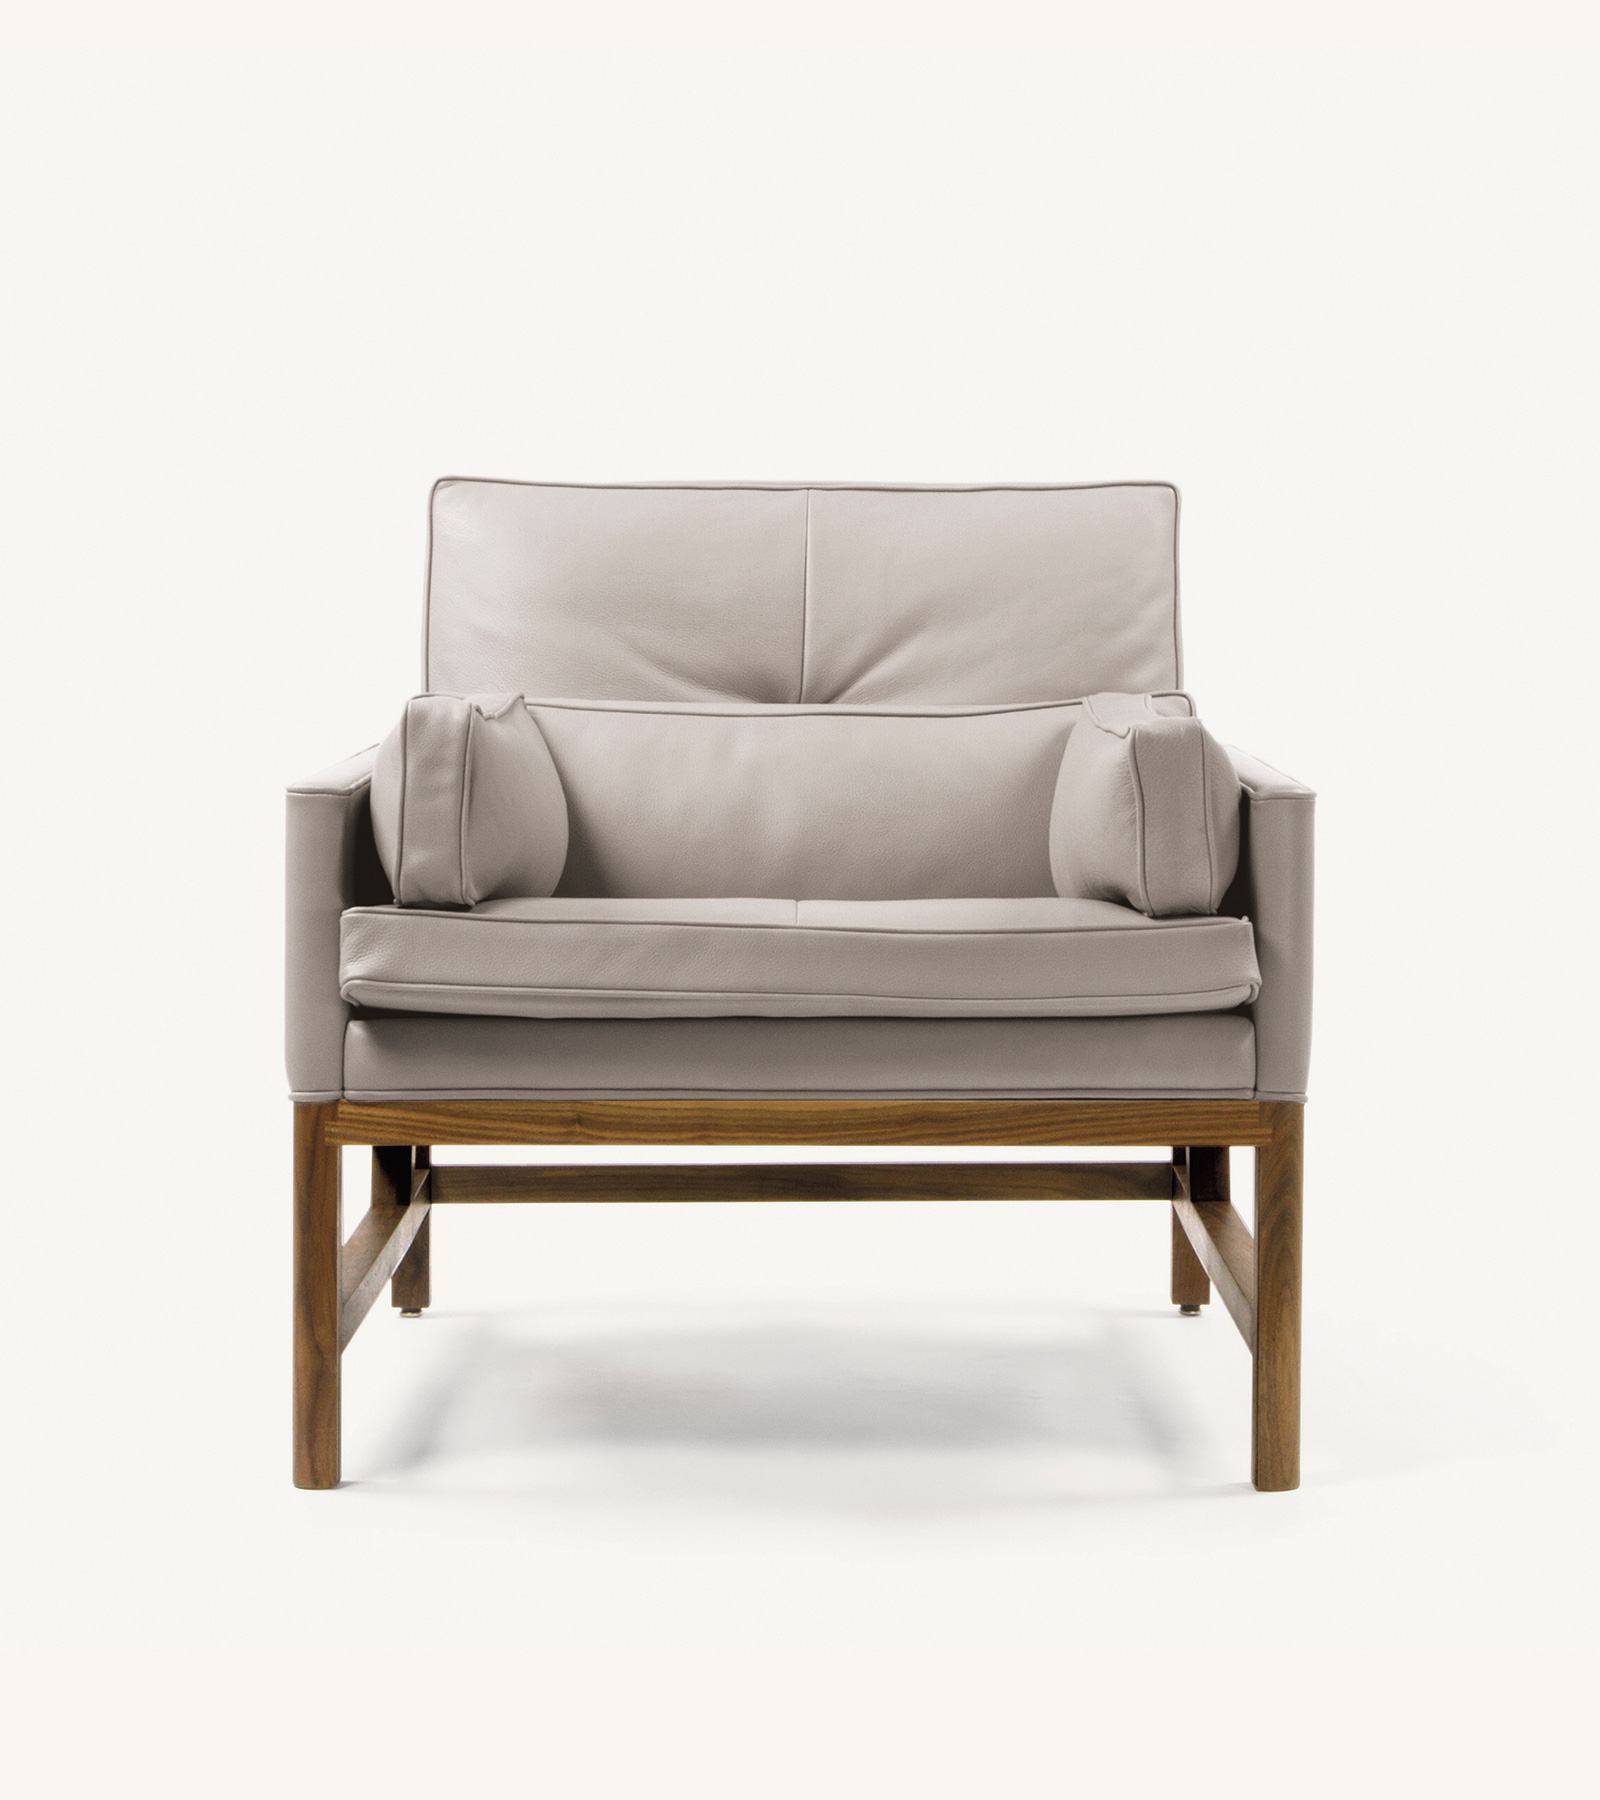 TinnappleMetz-bassamfellows-Wood-Frame-Lounge-Chair-02